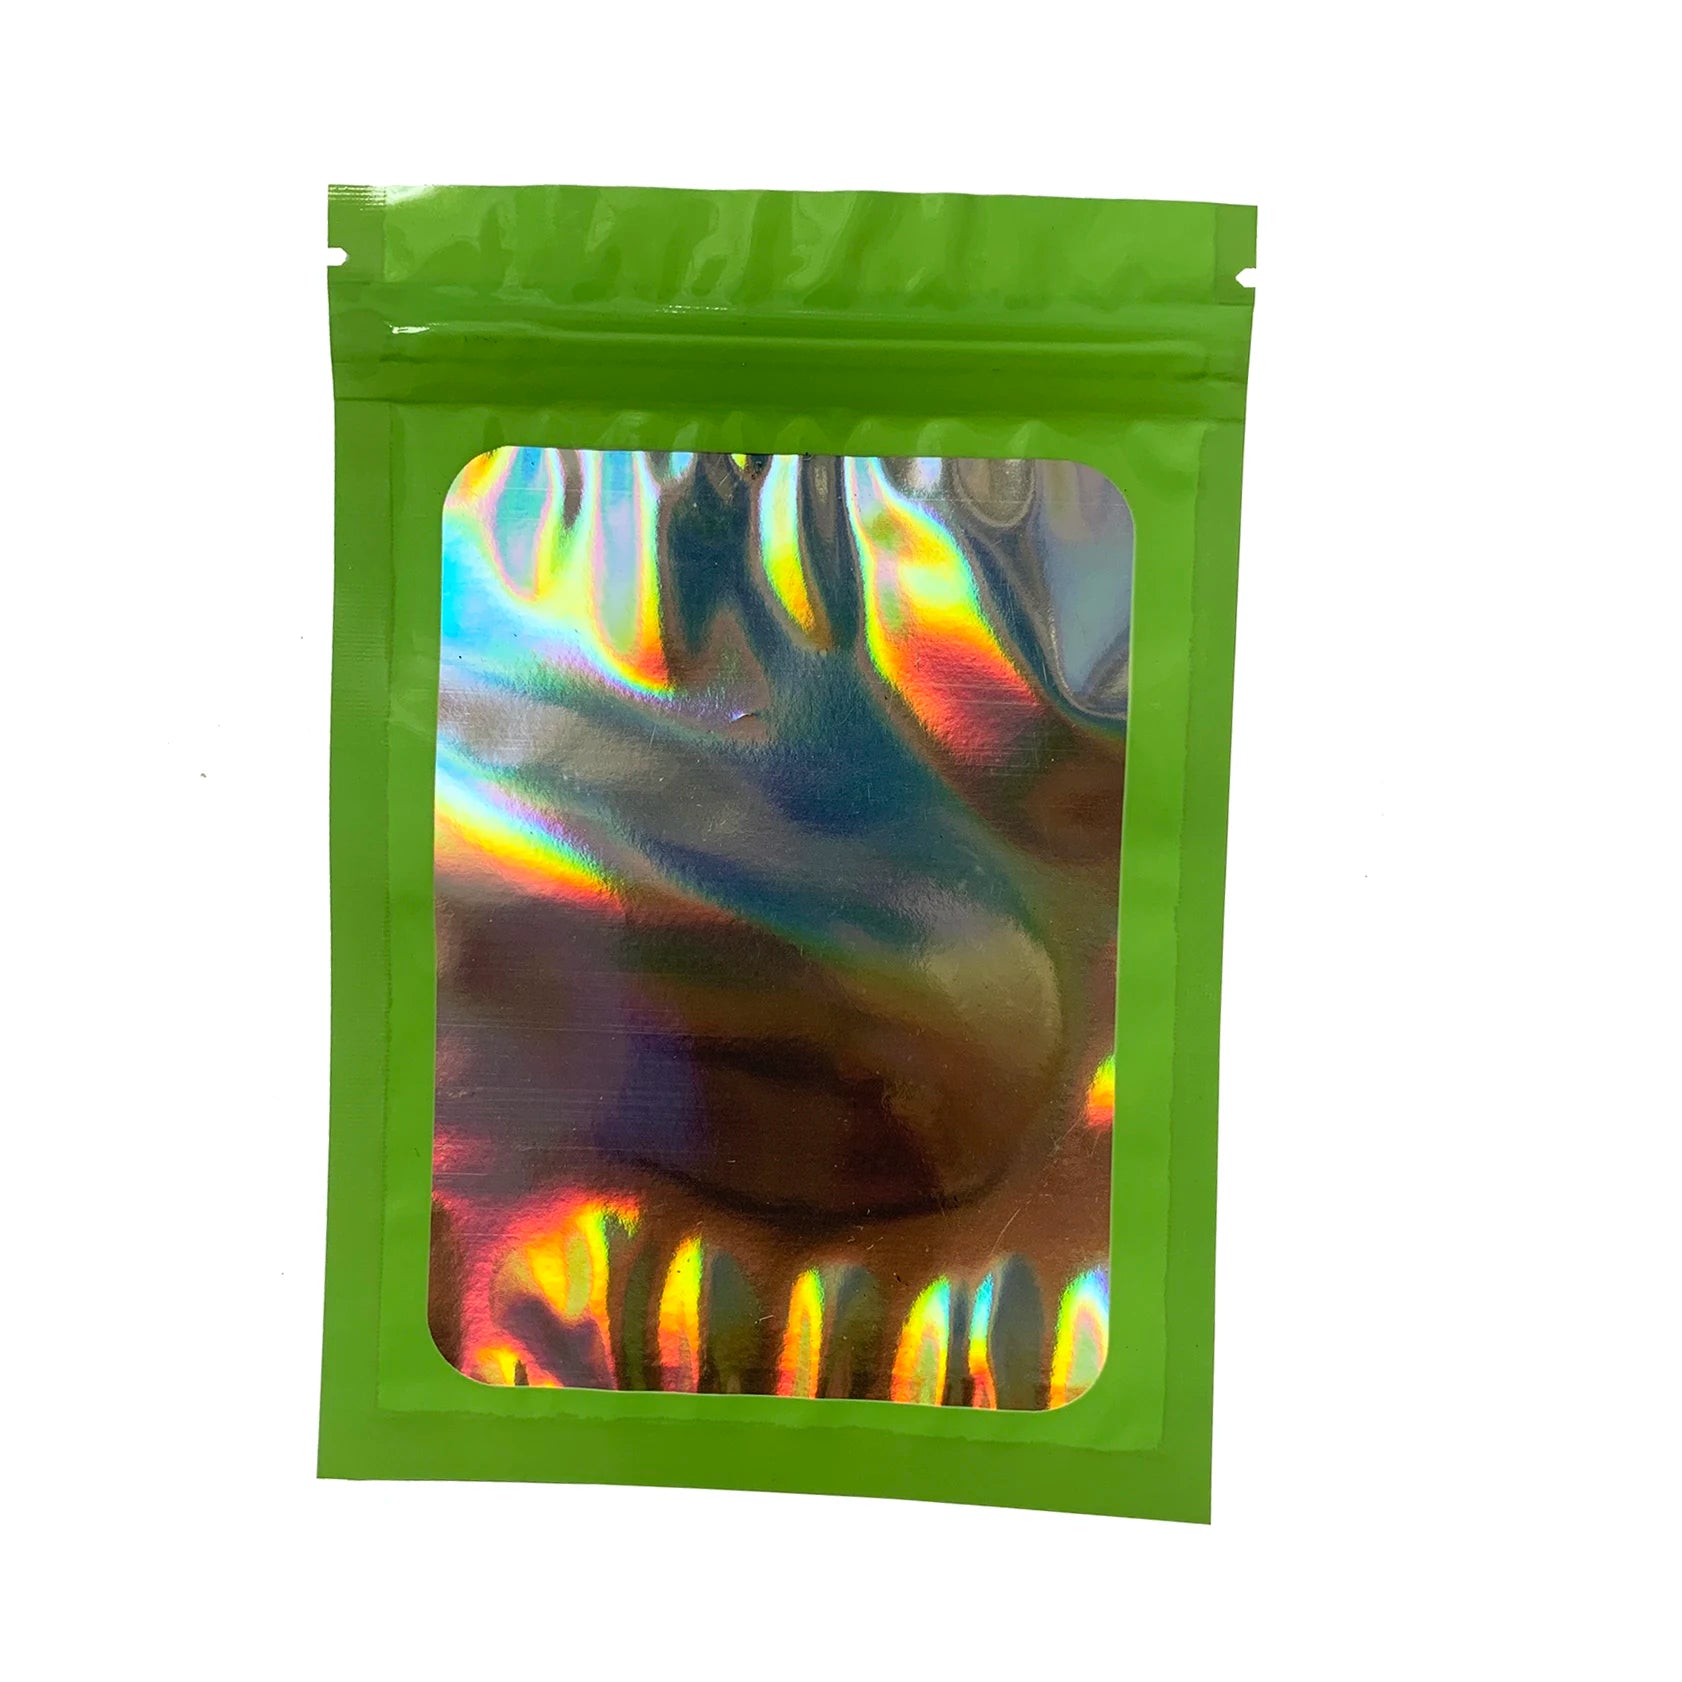 50 pcsthick hajukestävä Mylar -laukut holografinen laservärinen muovipakkaus pussi korut vähittäiskaupan säilytyspussi lahka zip lukkopussi